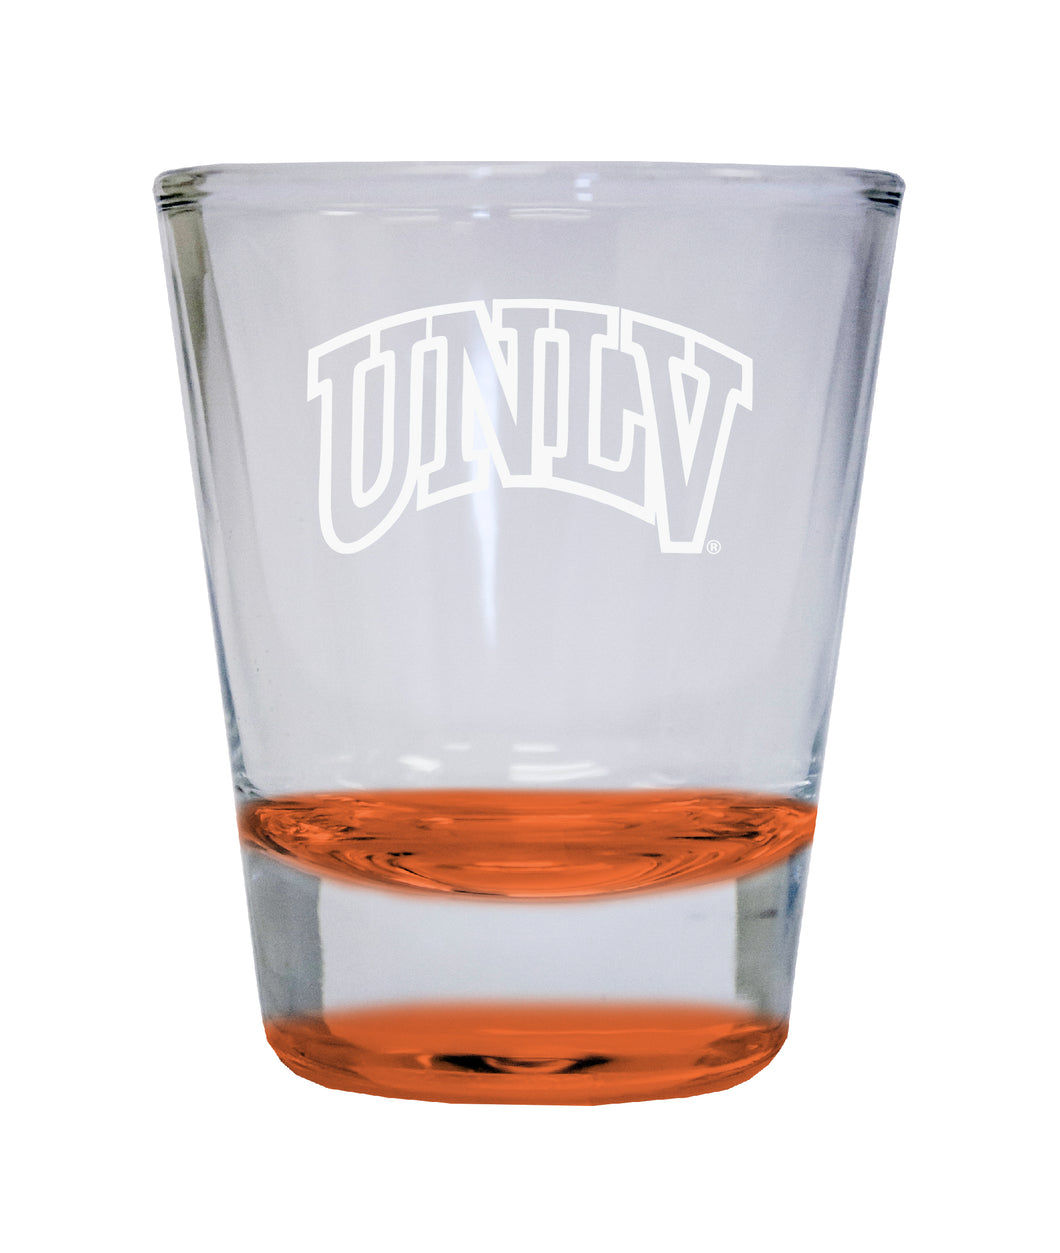 UNLV Rebels Etched Round Shot Glass 2 oz Orange